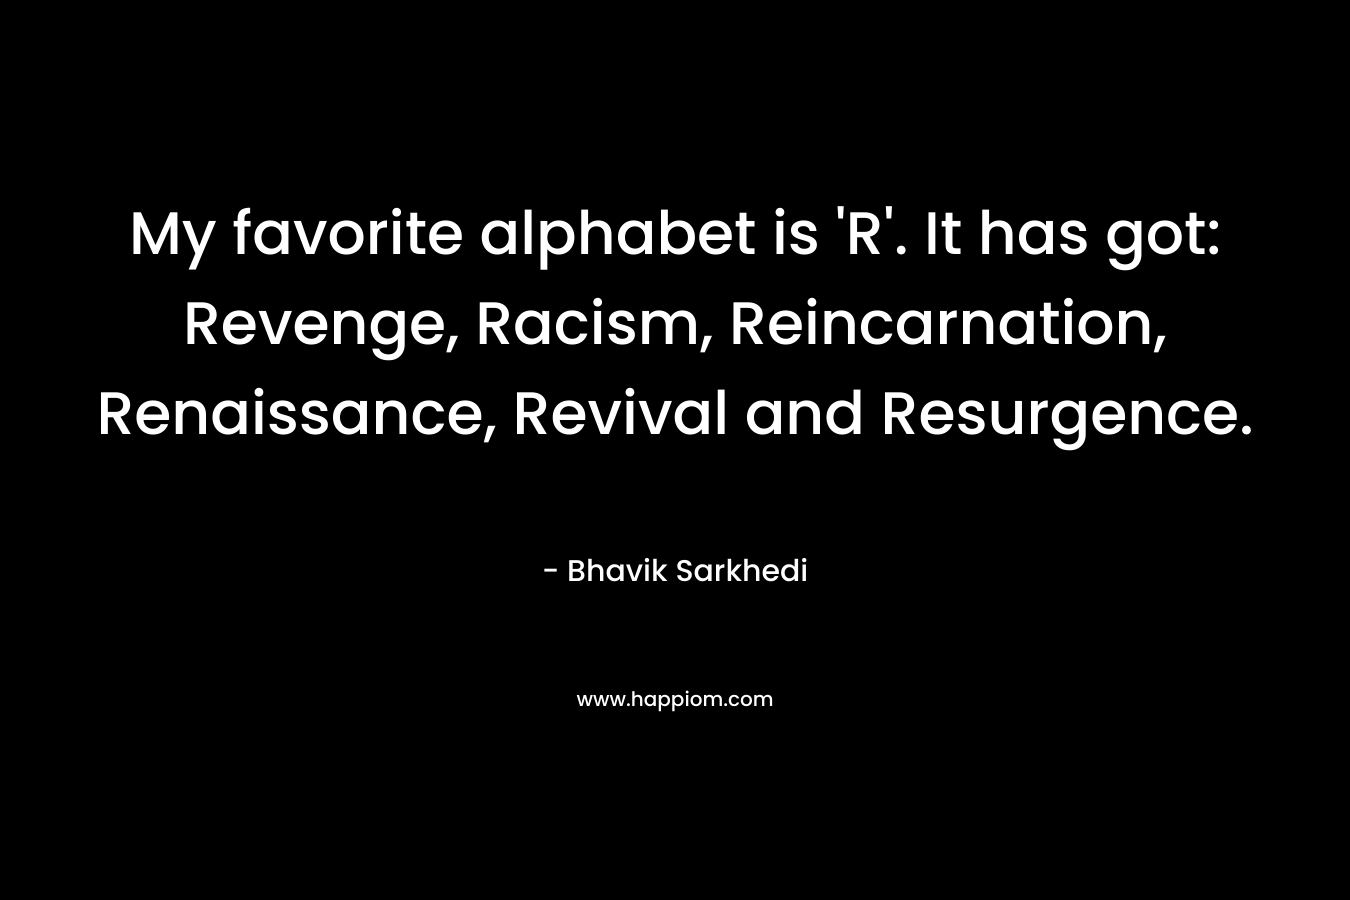 My favorite alphabet is 'R'. It has got: Revenge, Racism, Reincarnation, Renaissance, Revival and Resurgence.